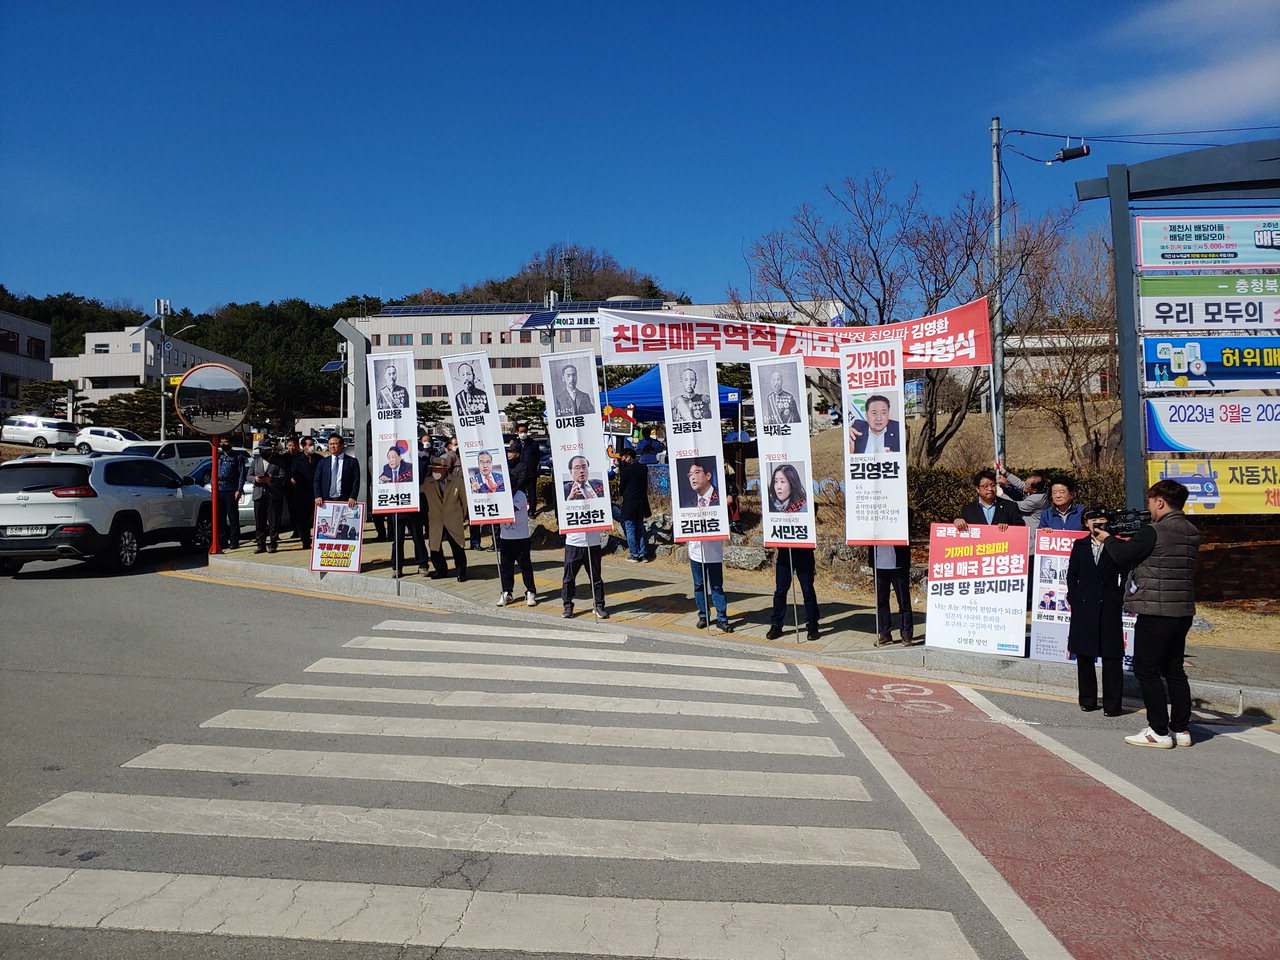 14일 제천지역 8개 시민단체가 제천시청 정문앞에서 김영환 충북지사 친일 발언에 대한 사과를 요구하는 퍼포먼스를 펼치고 있다.